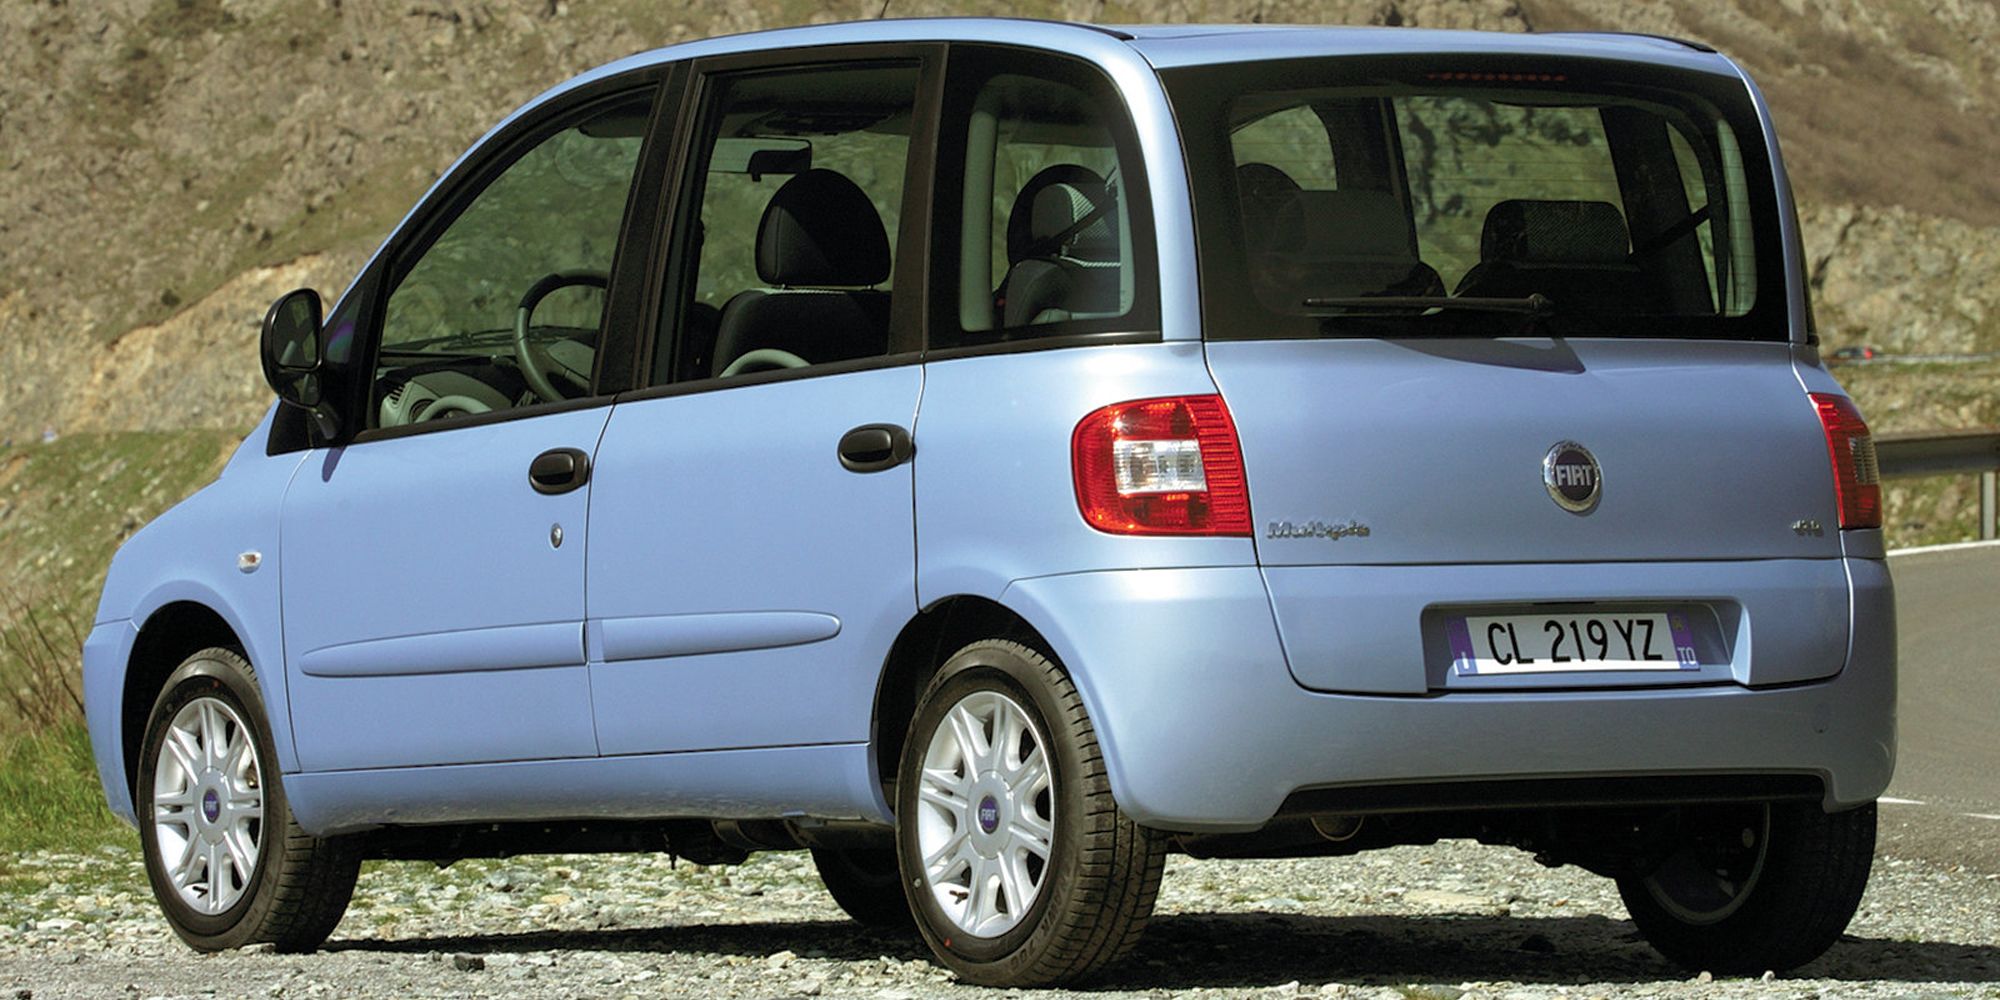 A Fiat Multipla in blue